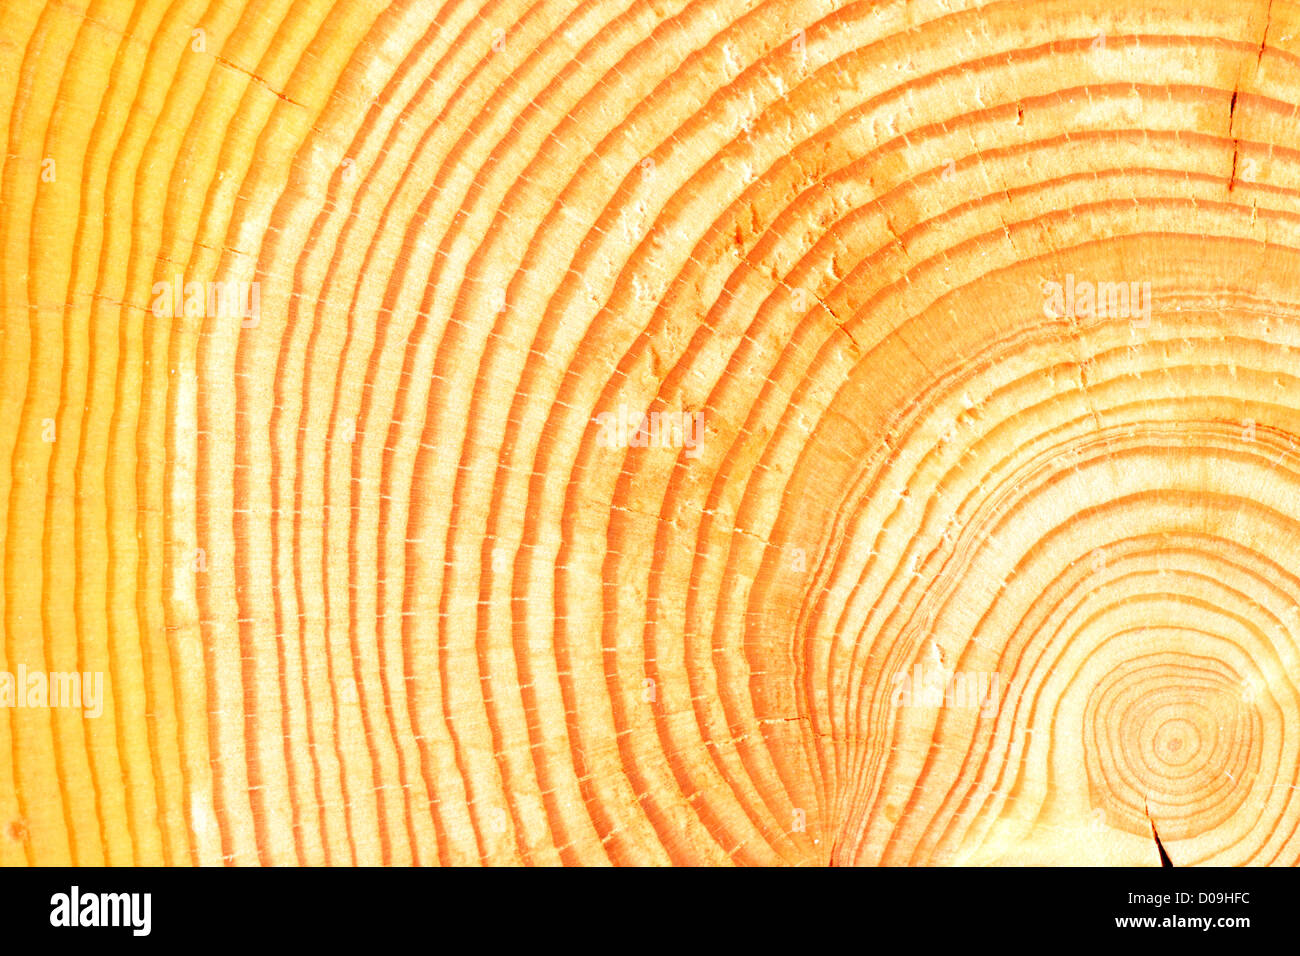 Une vue transversale d'un journal indiquant les anneaux de croissance annuelle dans le bois Banque D'Images